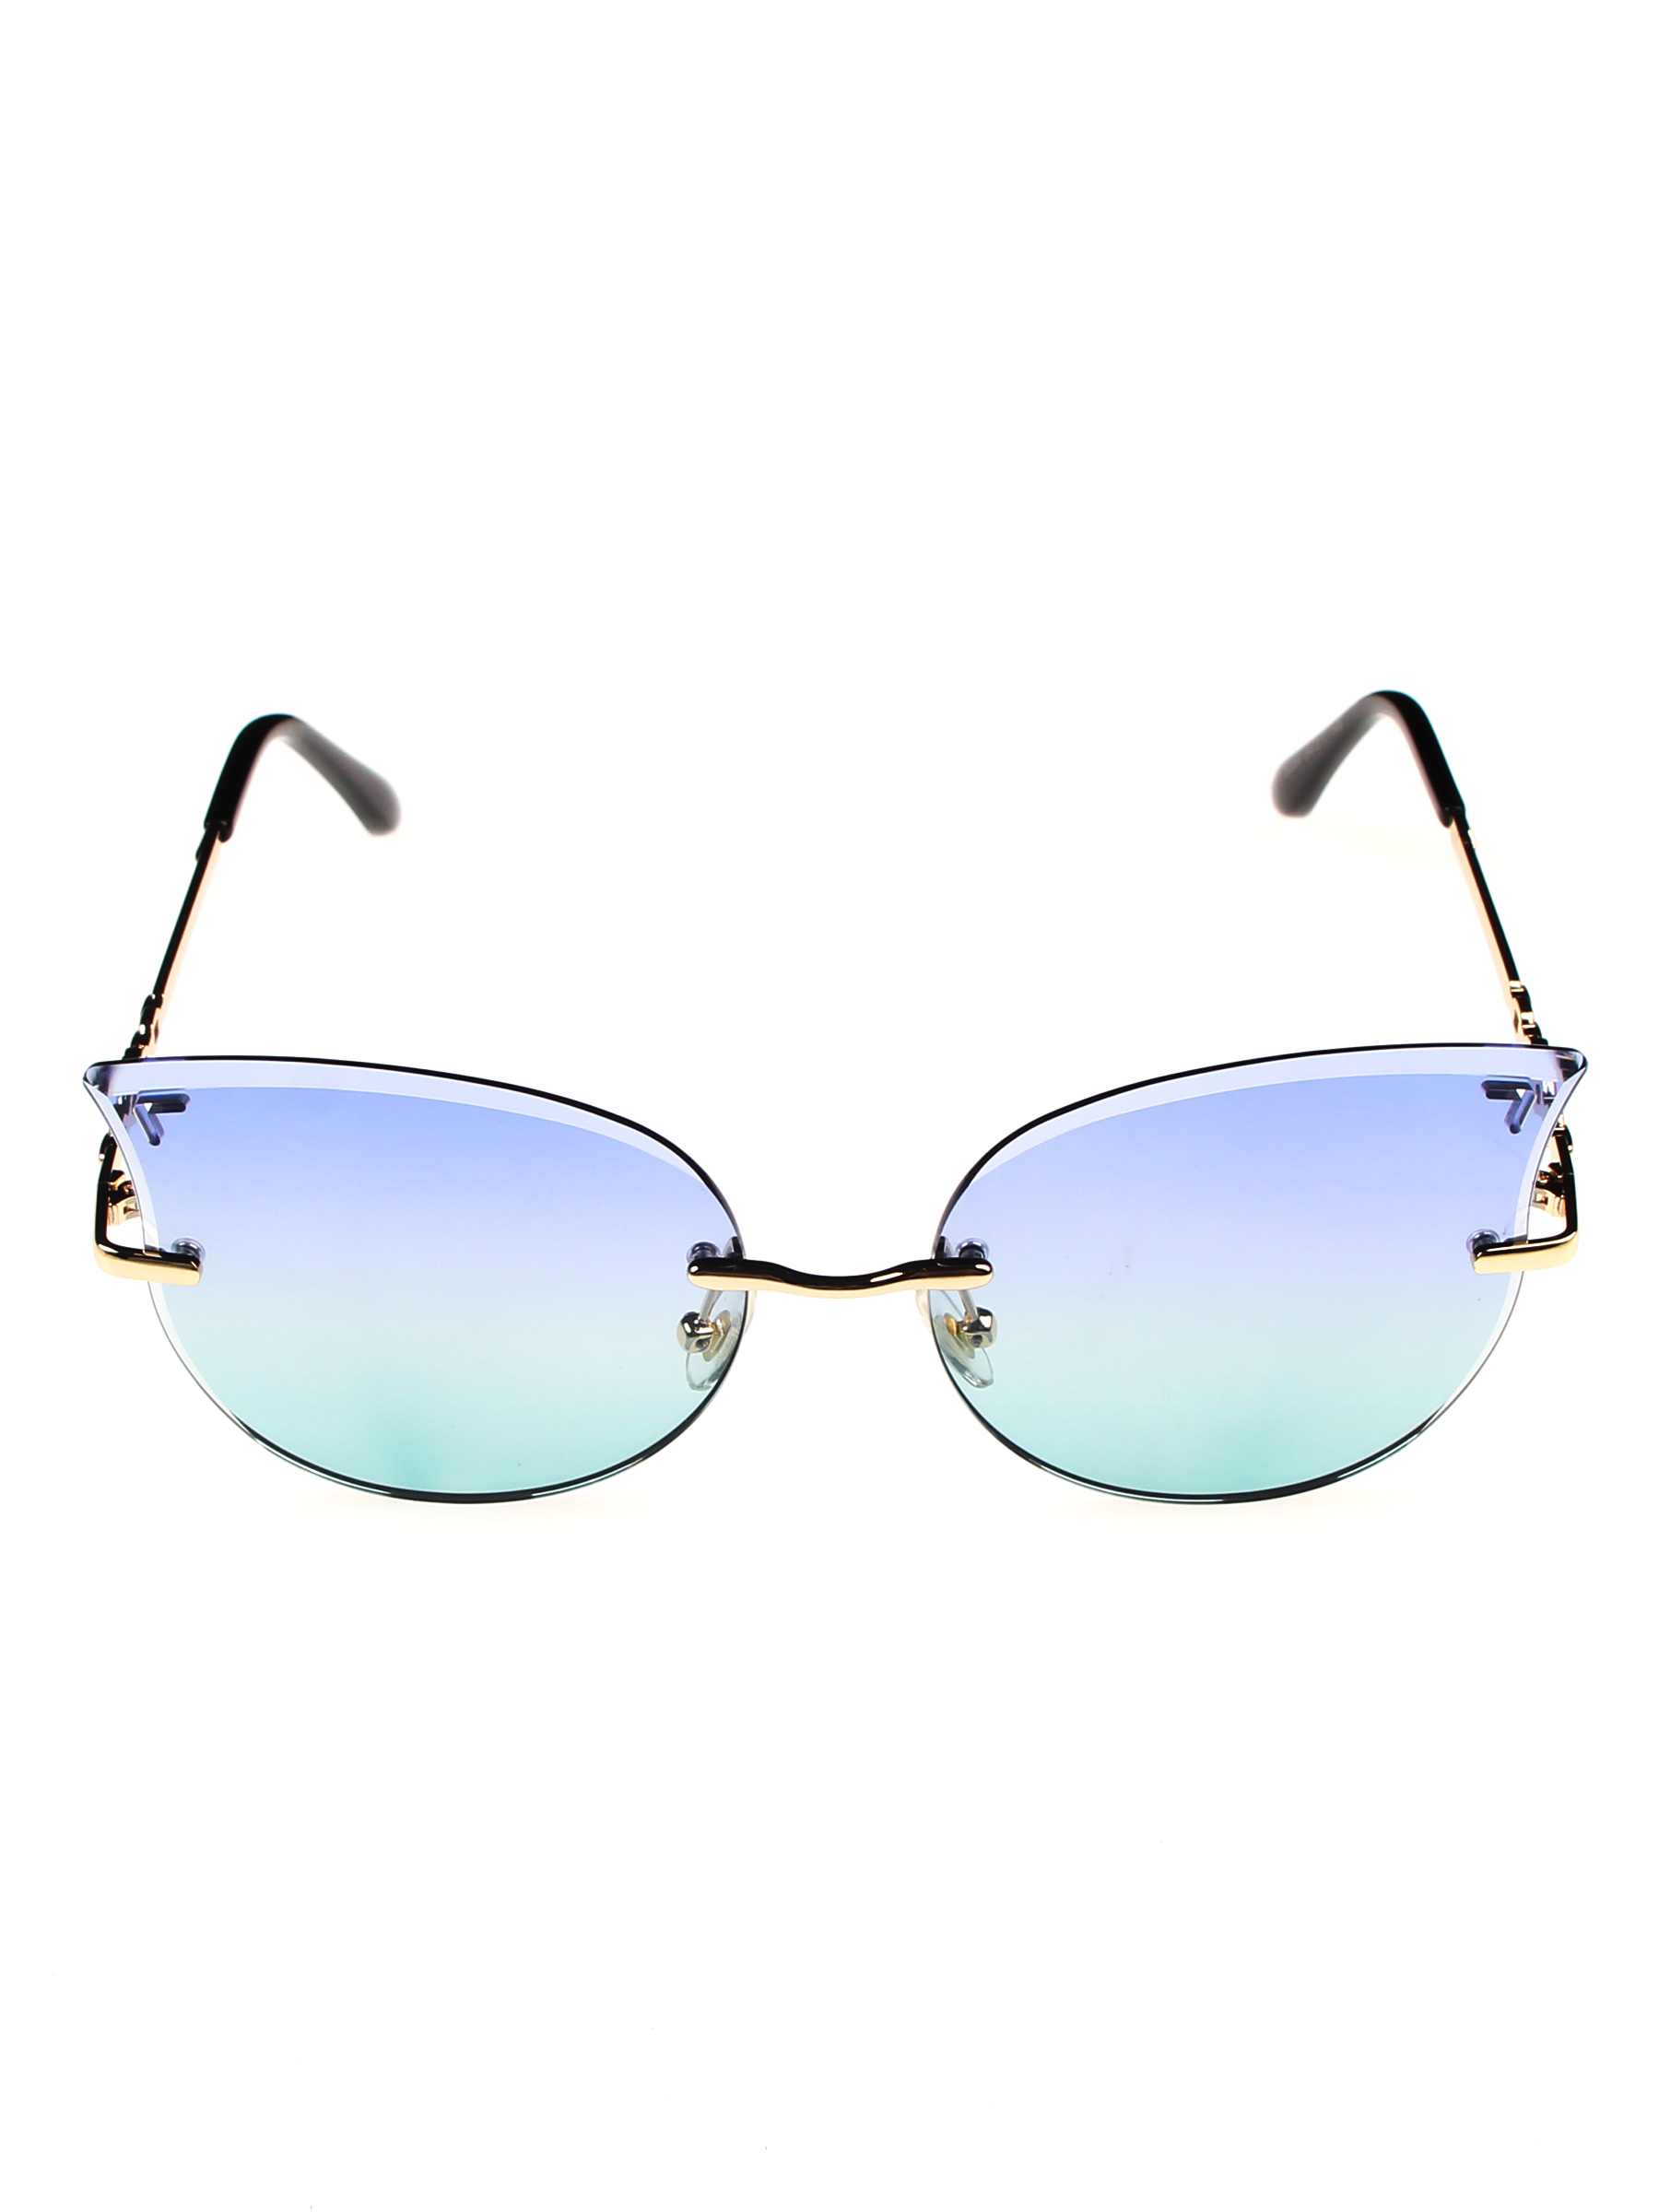 Солнцезащитные очки женские Pretty Mania NDP006 синие/зеленые